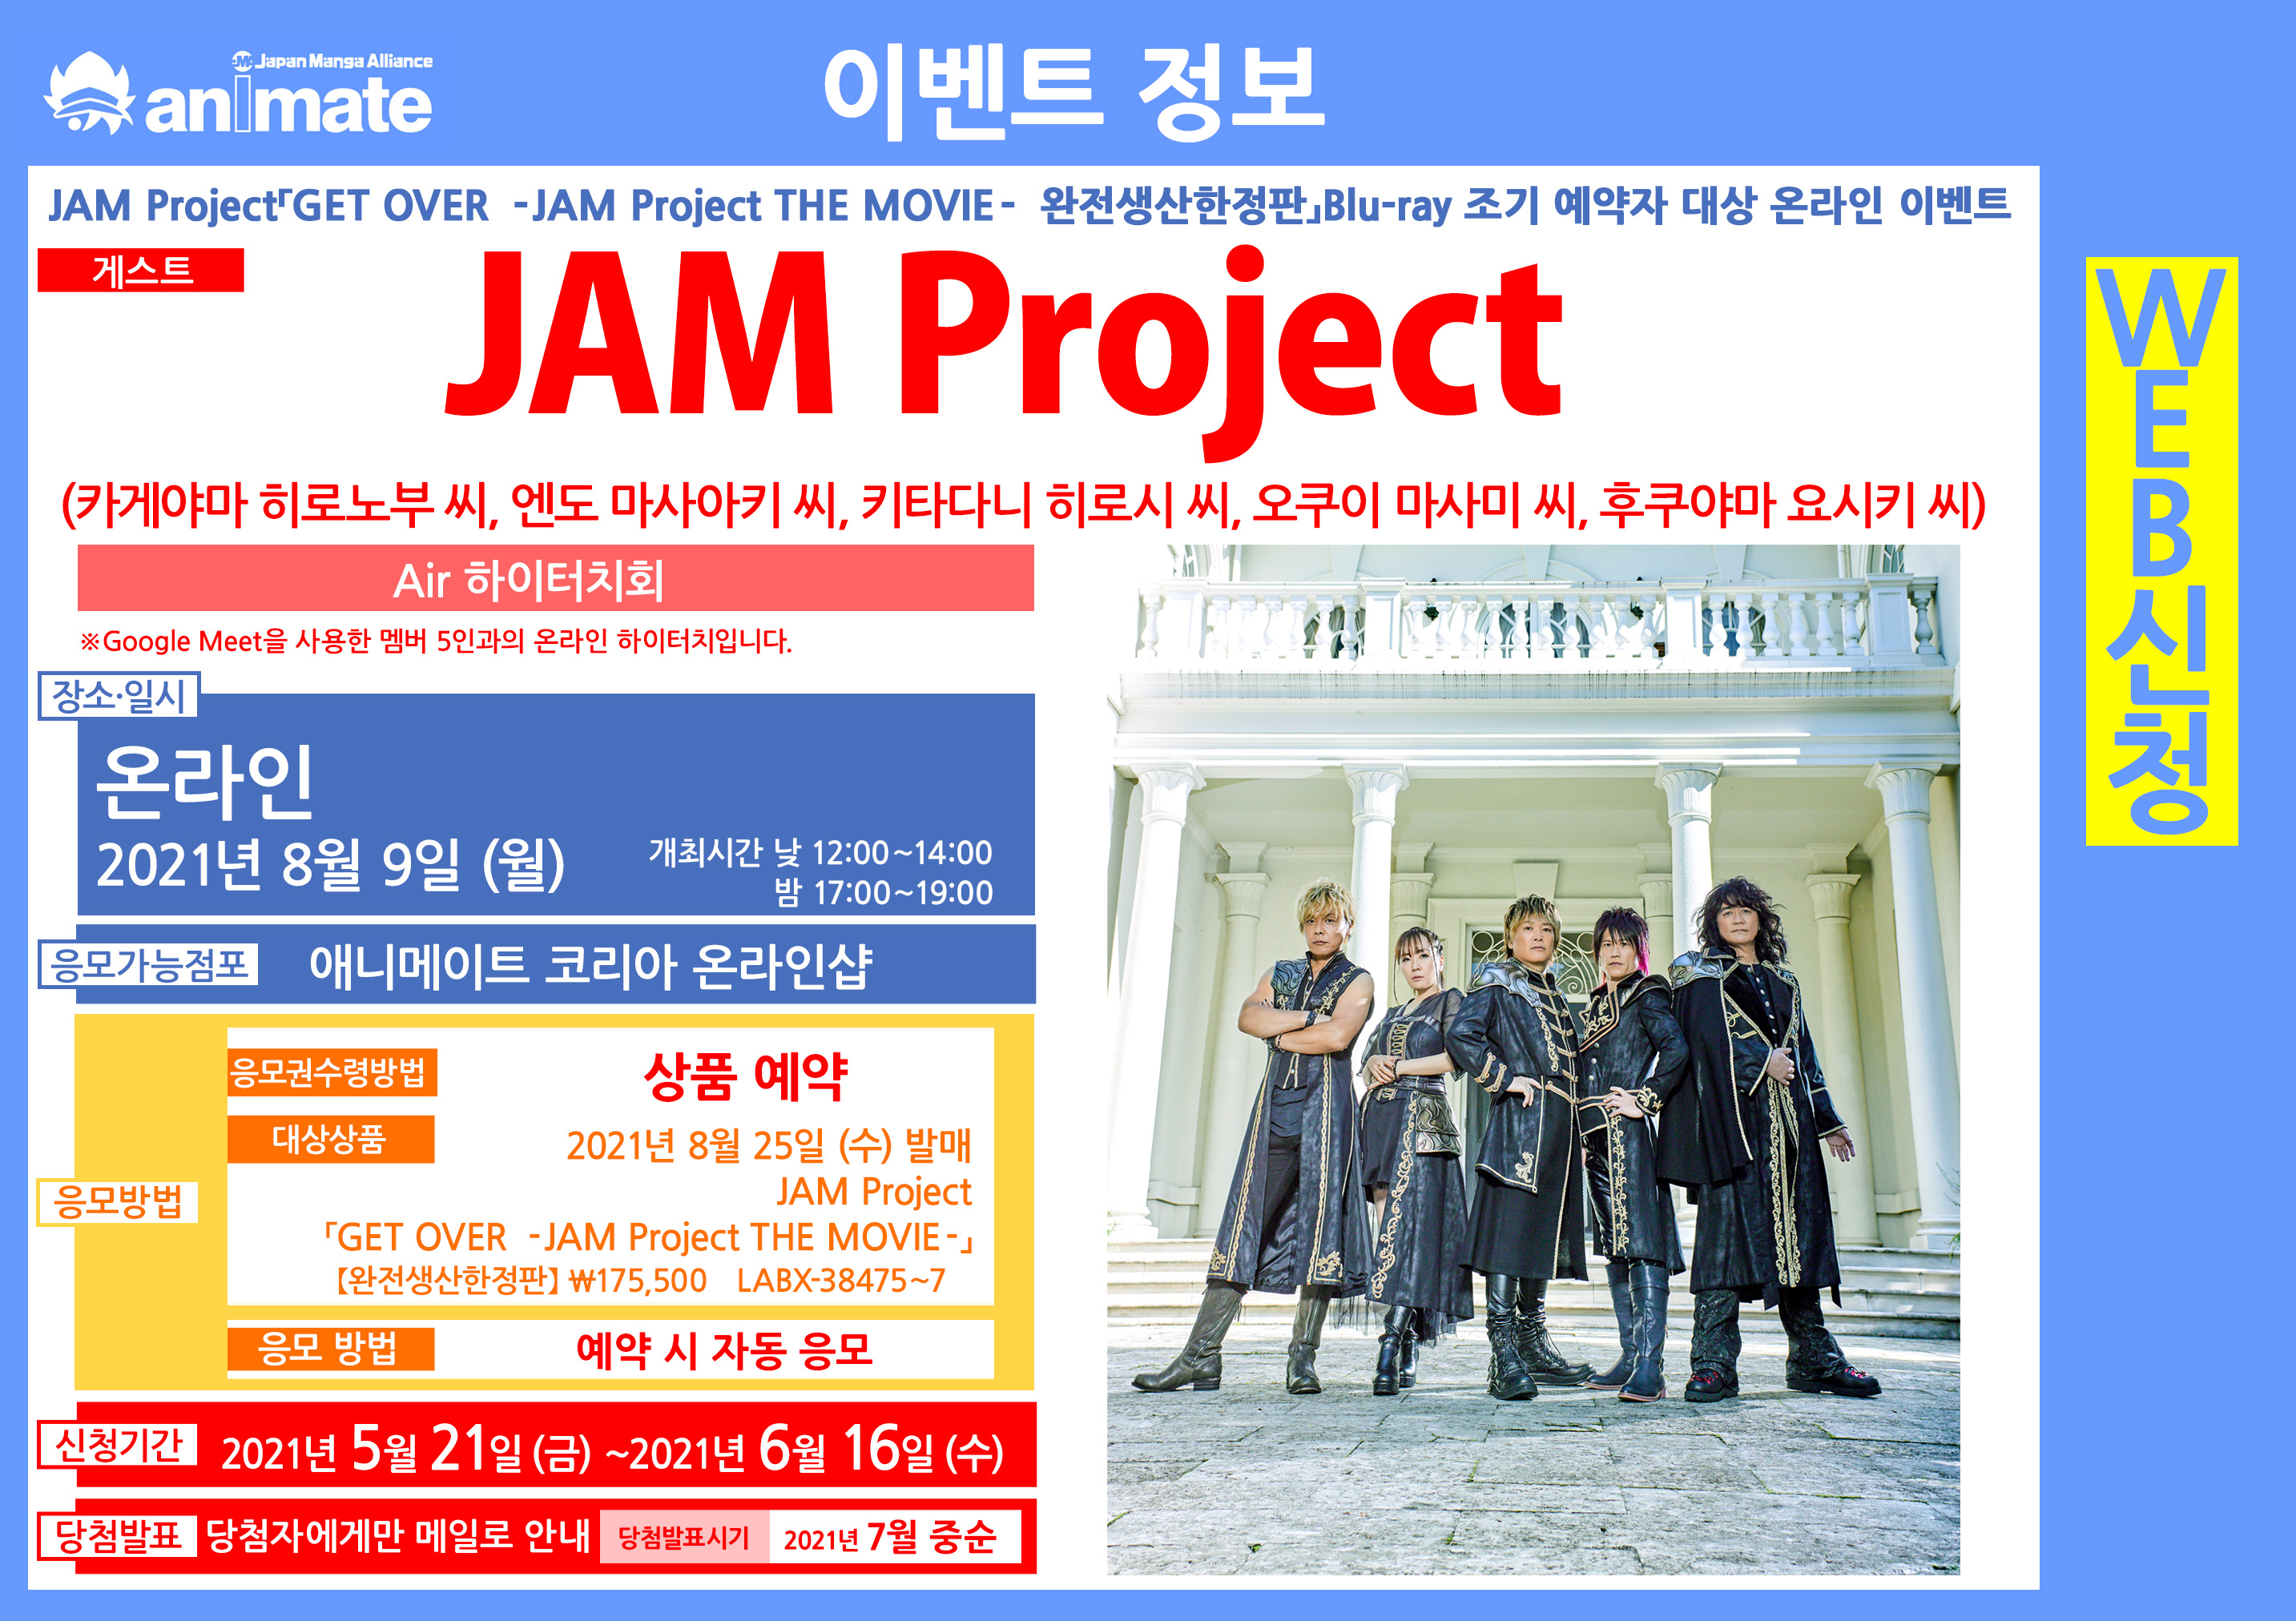 ★예약상품★【Blu-ray】영화 GET OVER -JAM Project THE MOVIE- 완전생산한정판